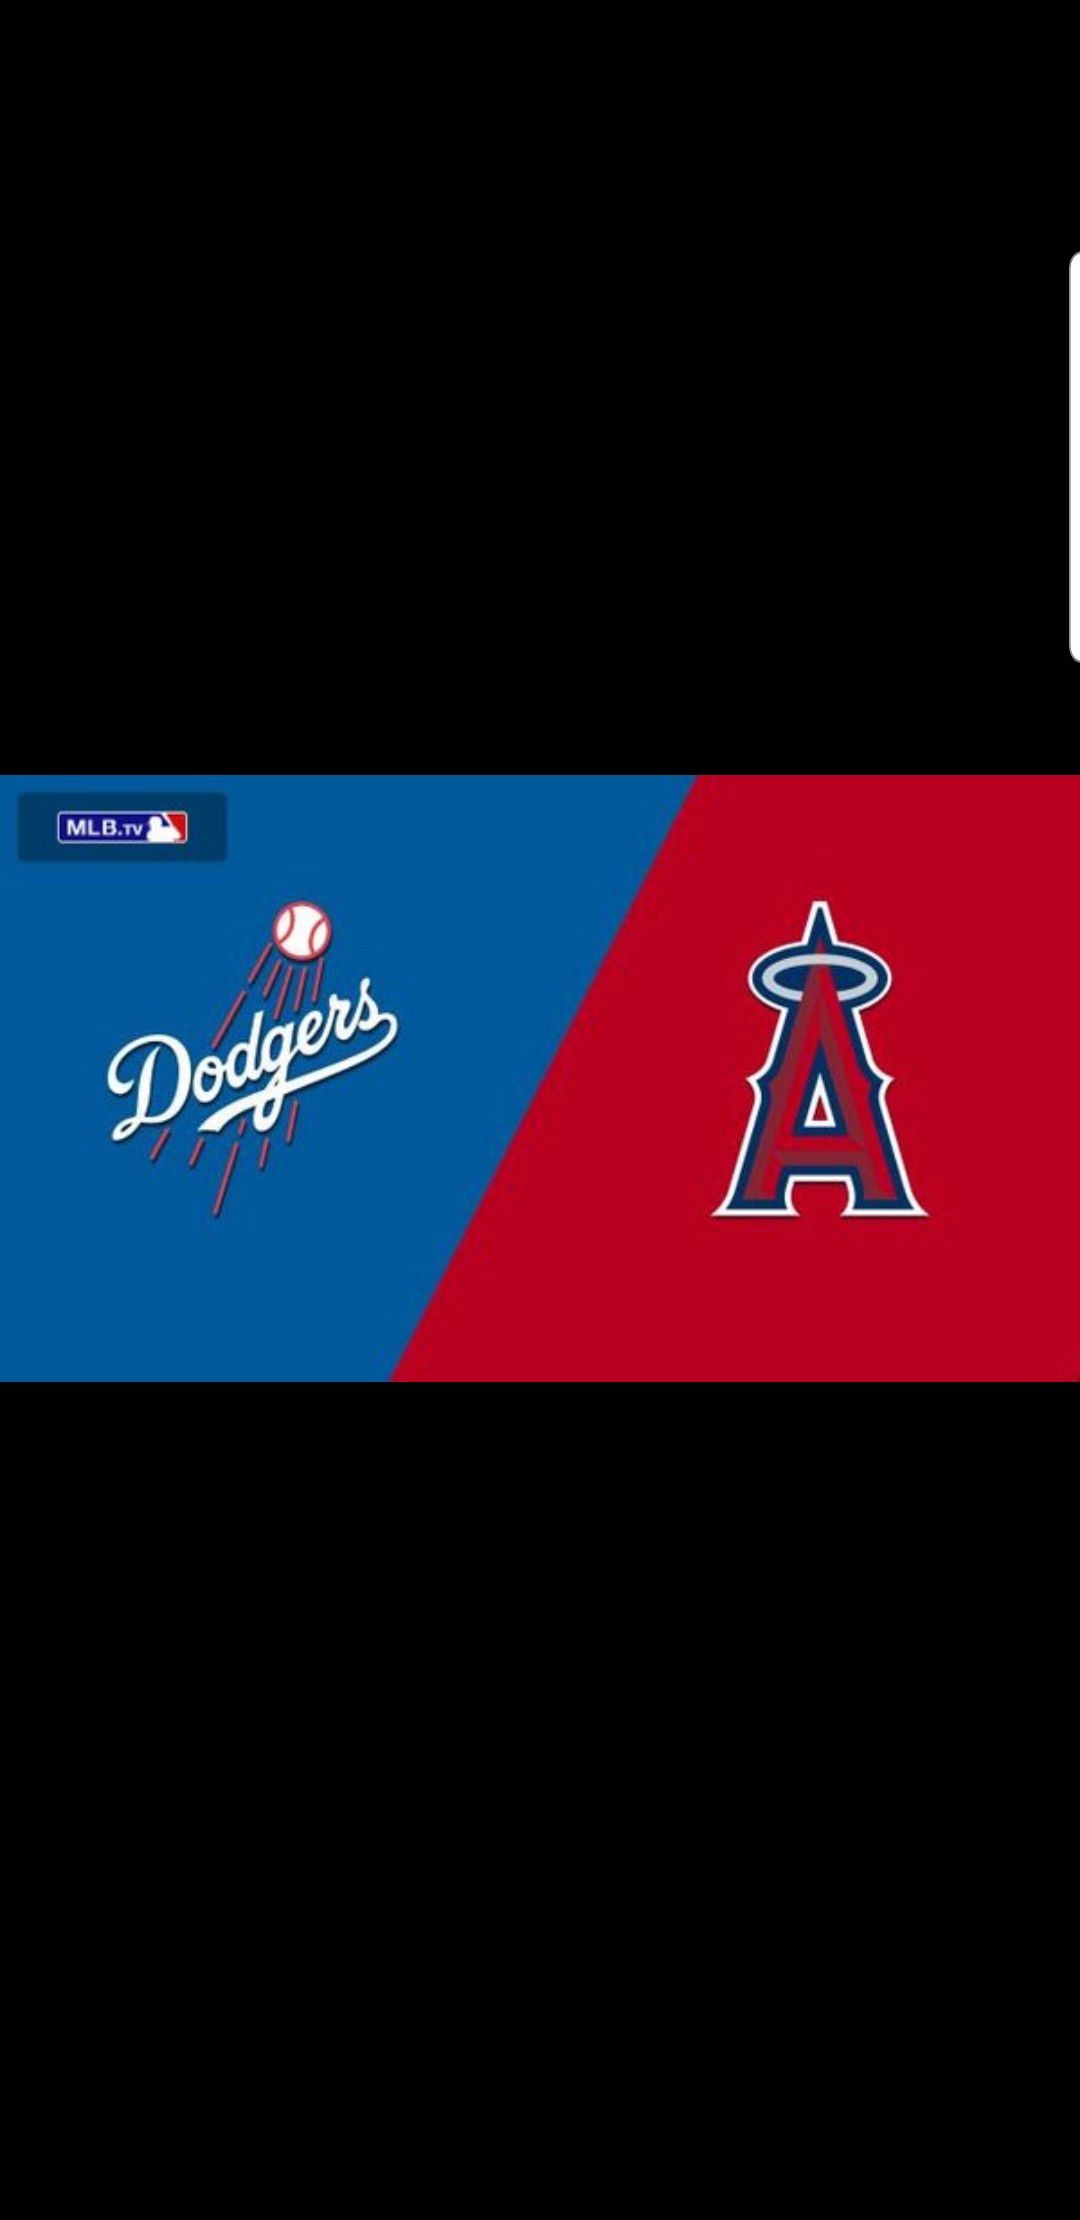 Dodgers vs Angeles